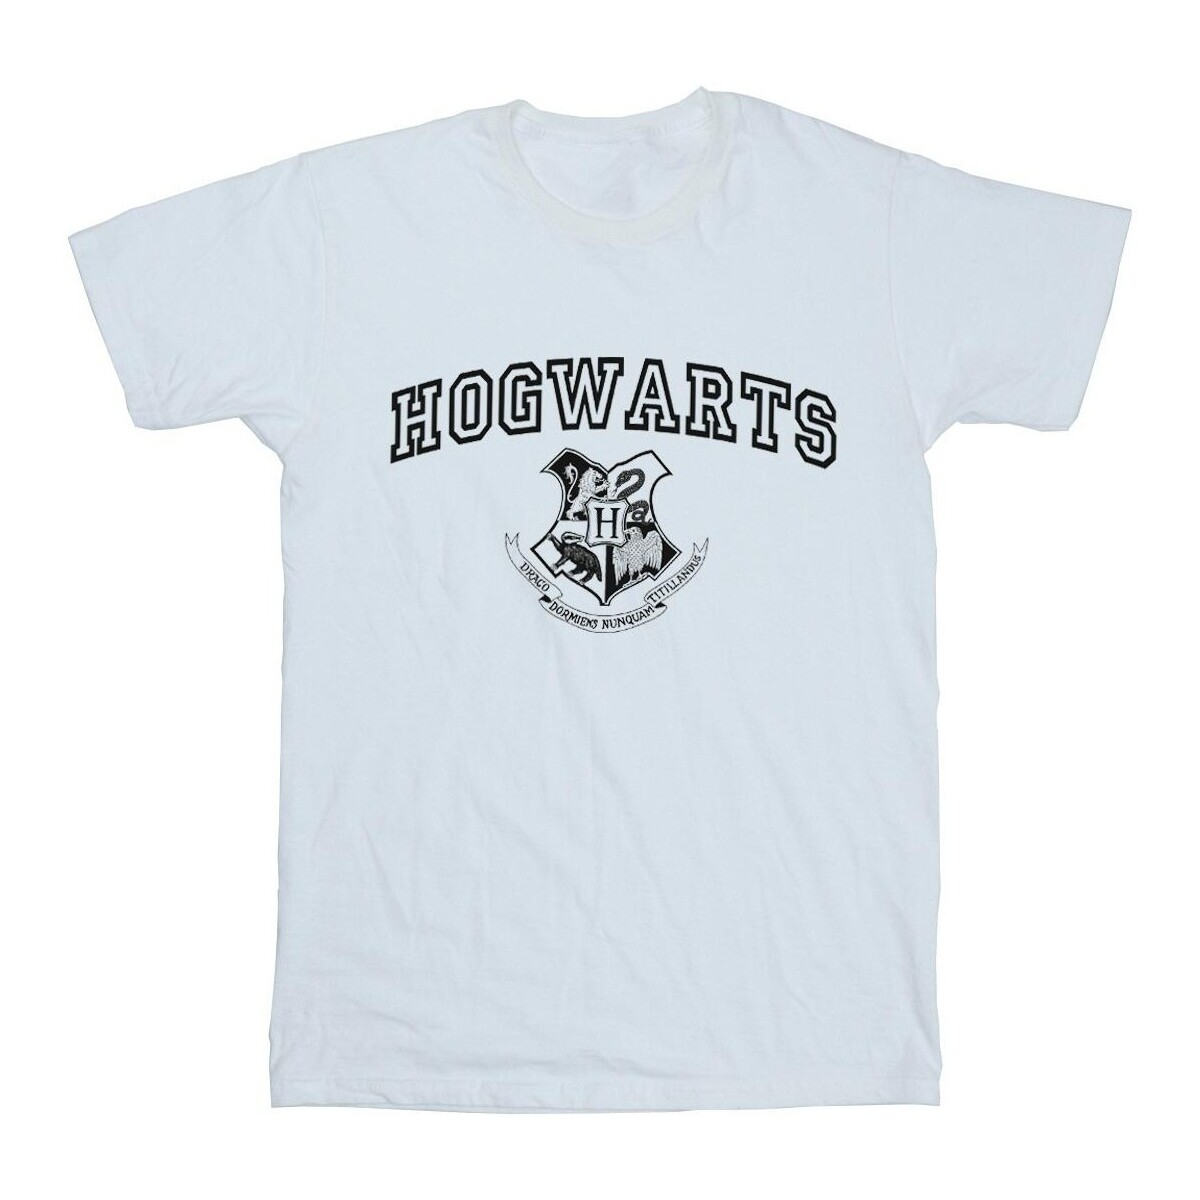 Vêtements Homme T-shirts manches longues Harry Potter  Blanc